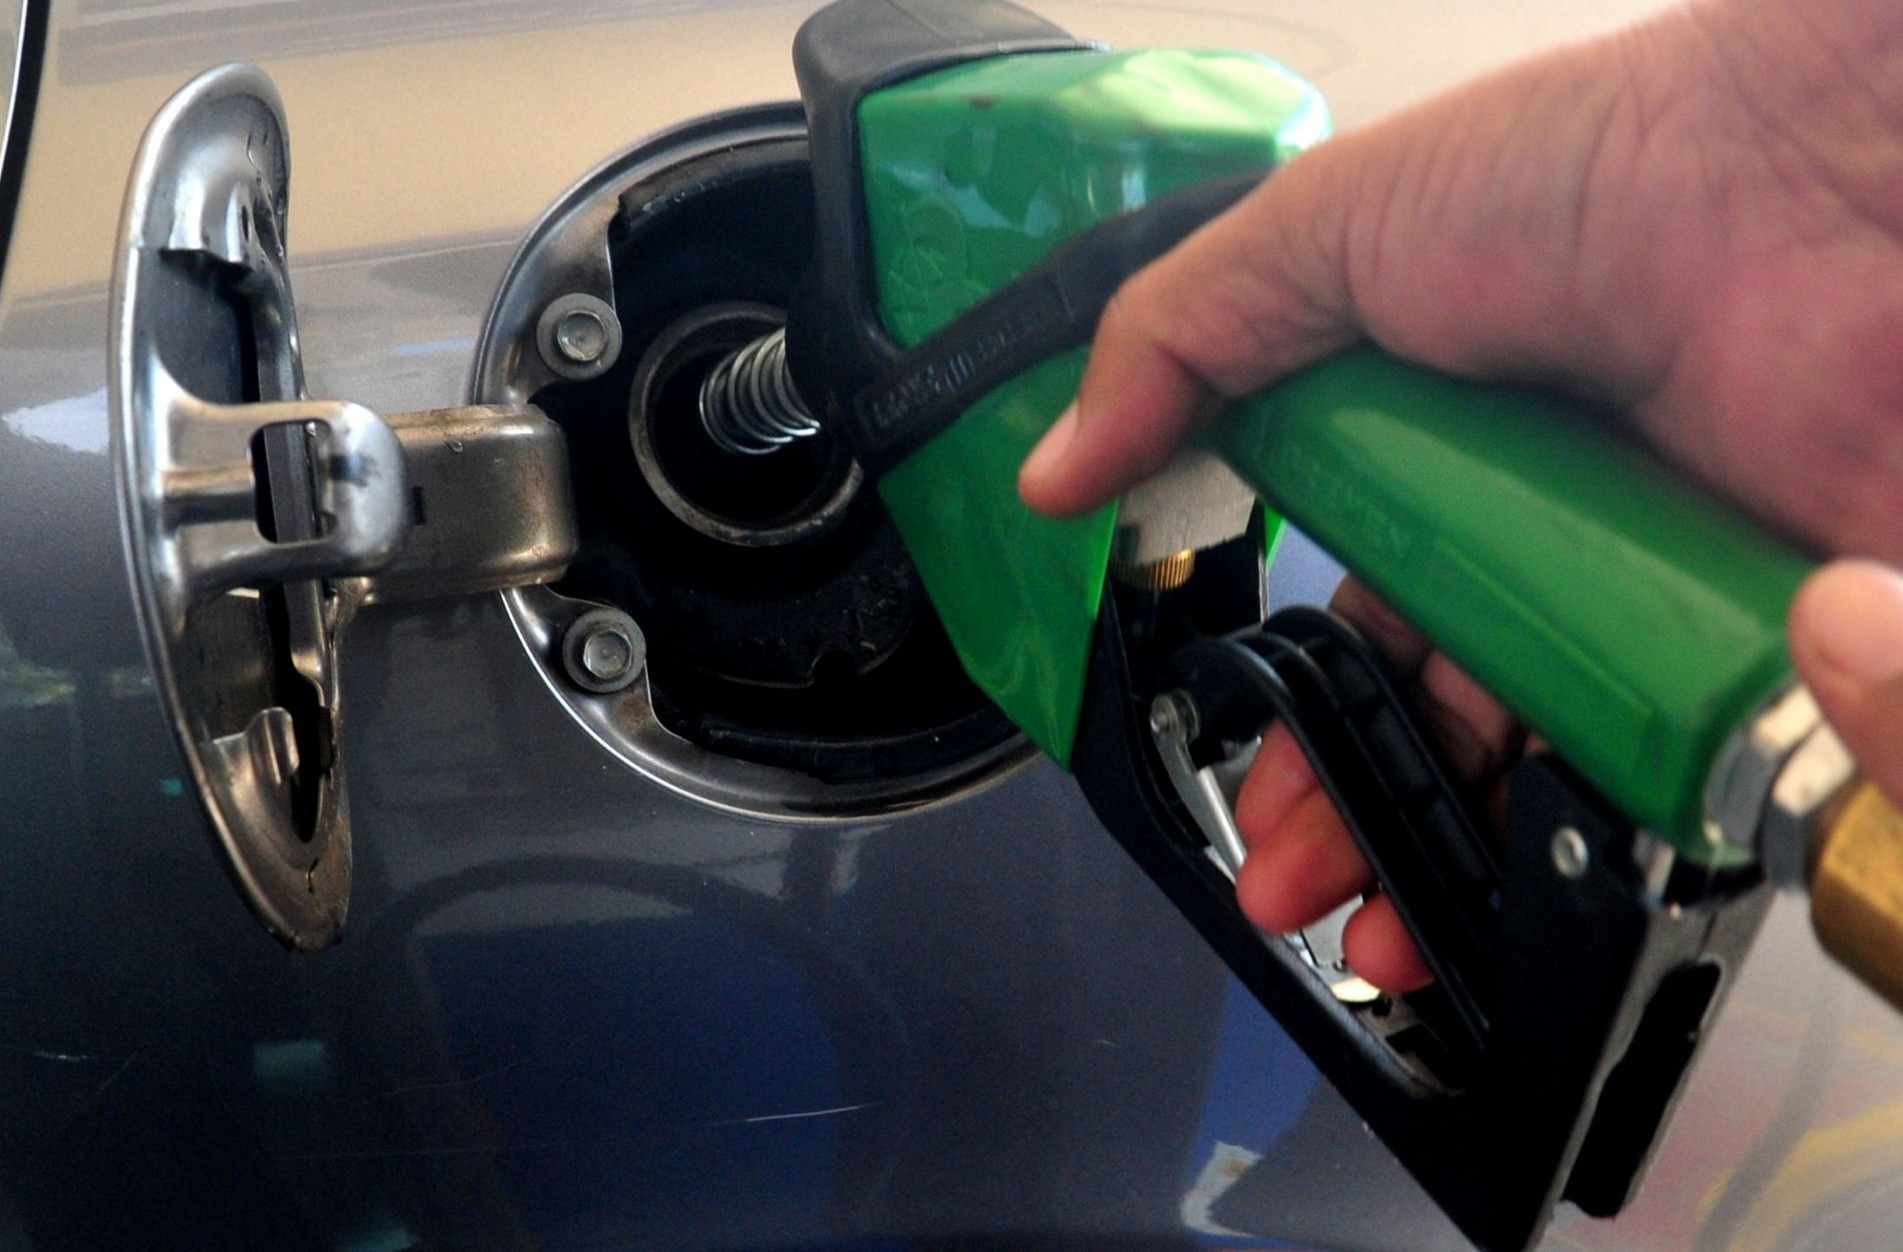 Preço médio do etanol sobe em 15 Estados e no DF e recua em dez, diz ANP